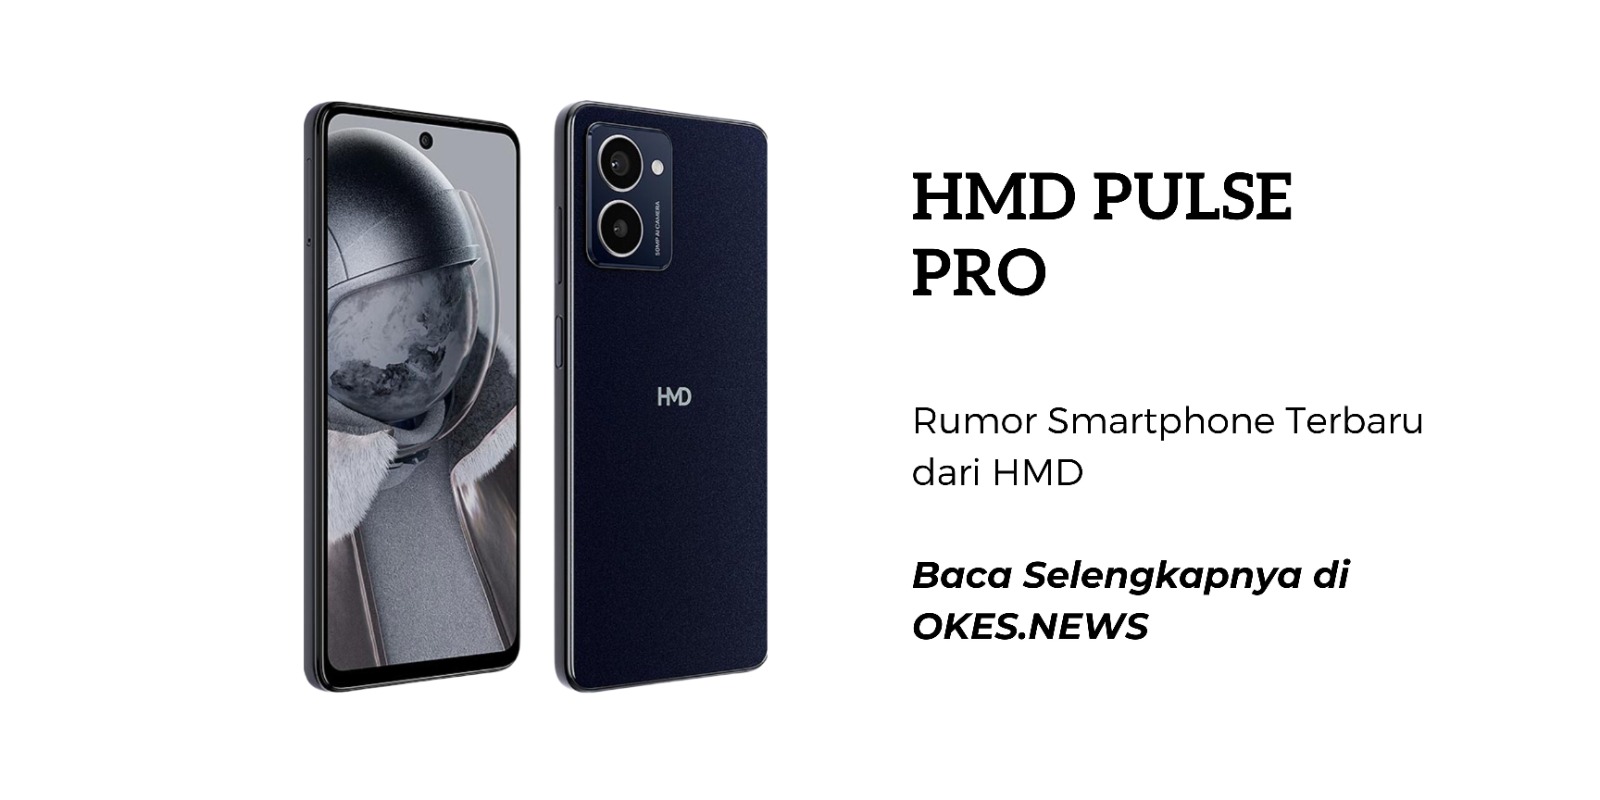 Spesifikasi Menarik Sebuah Smartphone yang Dirumorkan Hadir, HMD Pulse Pro